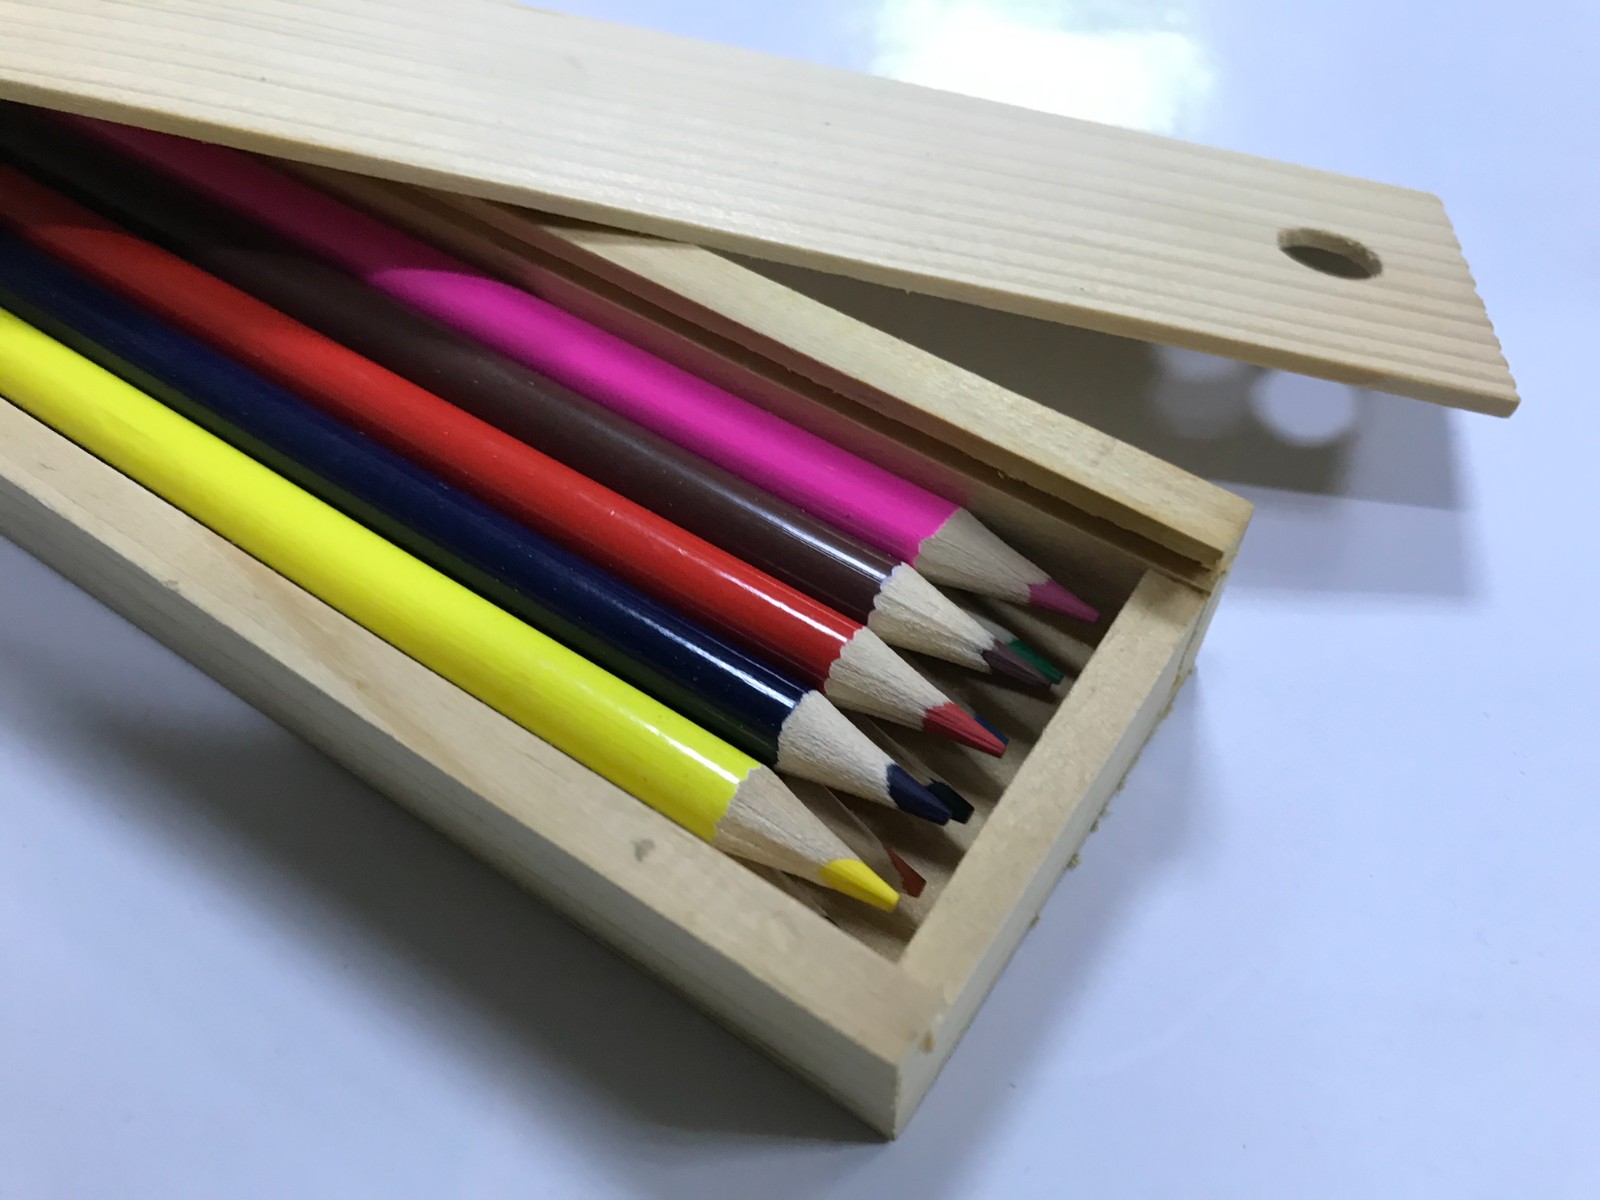 彩色鉛筆10色 木盒裝禮盒